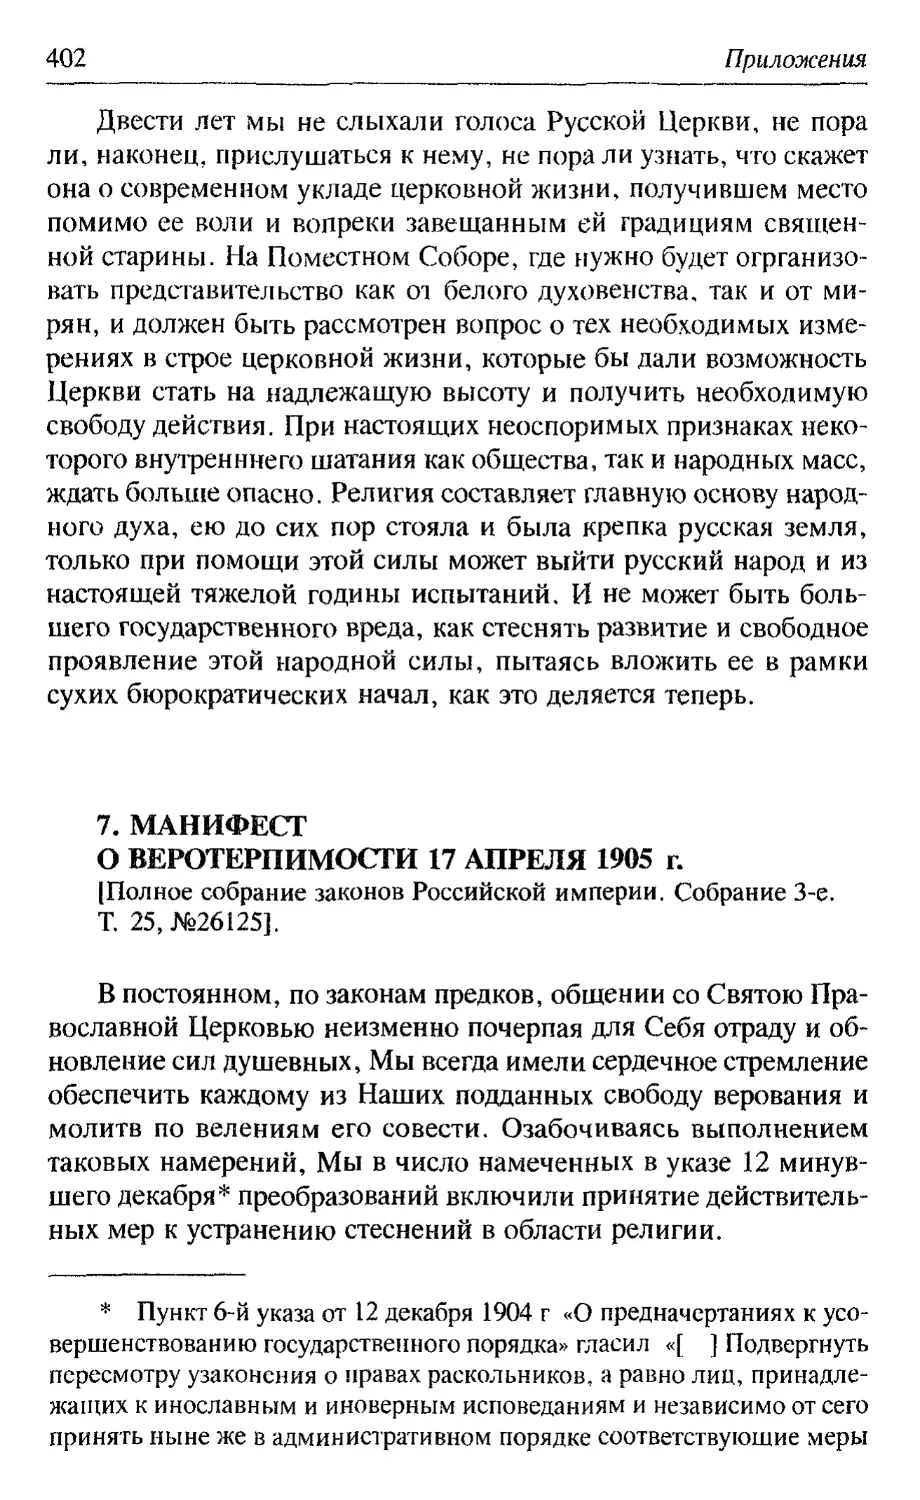 Манифест о веротерпимости 17 апреля 1905 г.